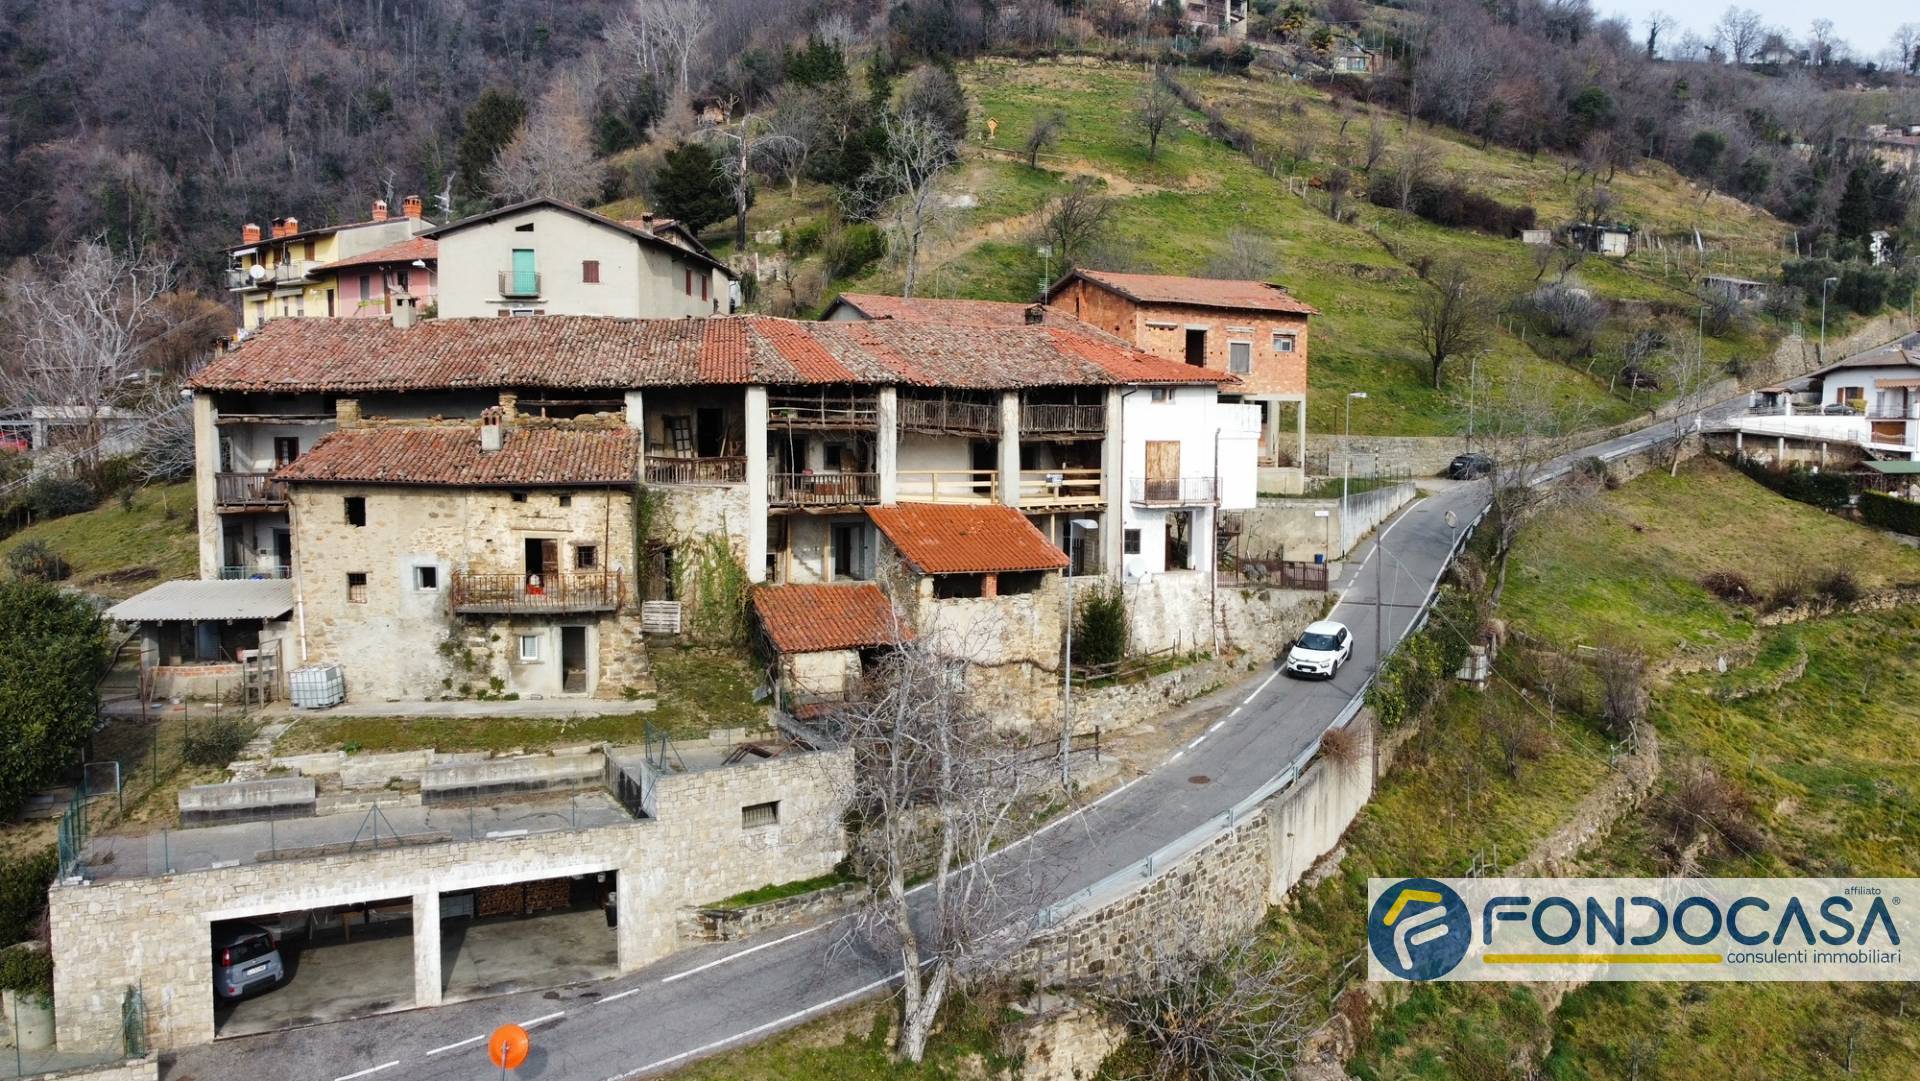 Rustico / Casale in vendita a Adrara San Martino, 8 locali, prezzo € 39.900 | PortaleAgenzieImmobiliari.it